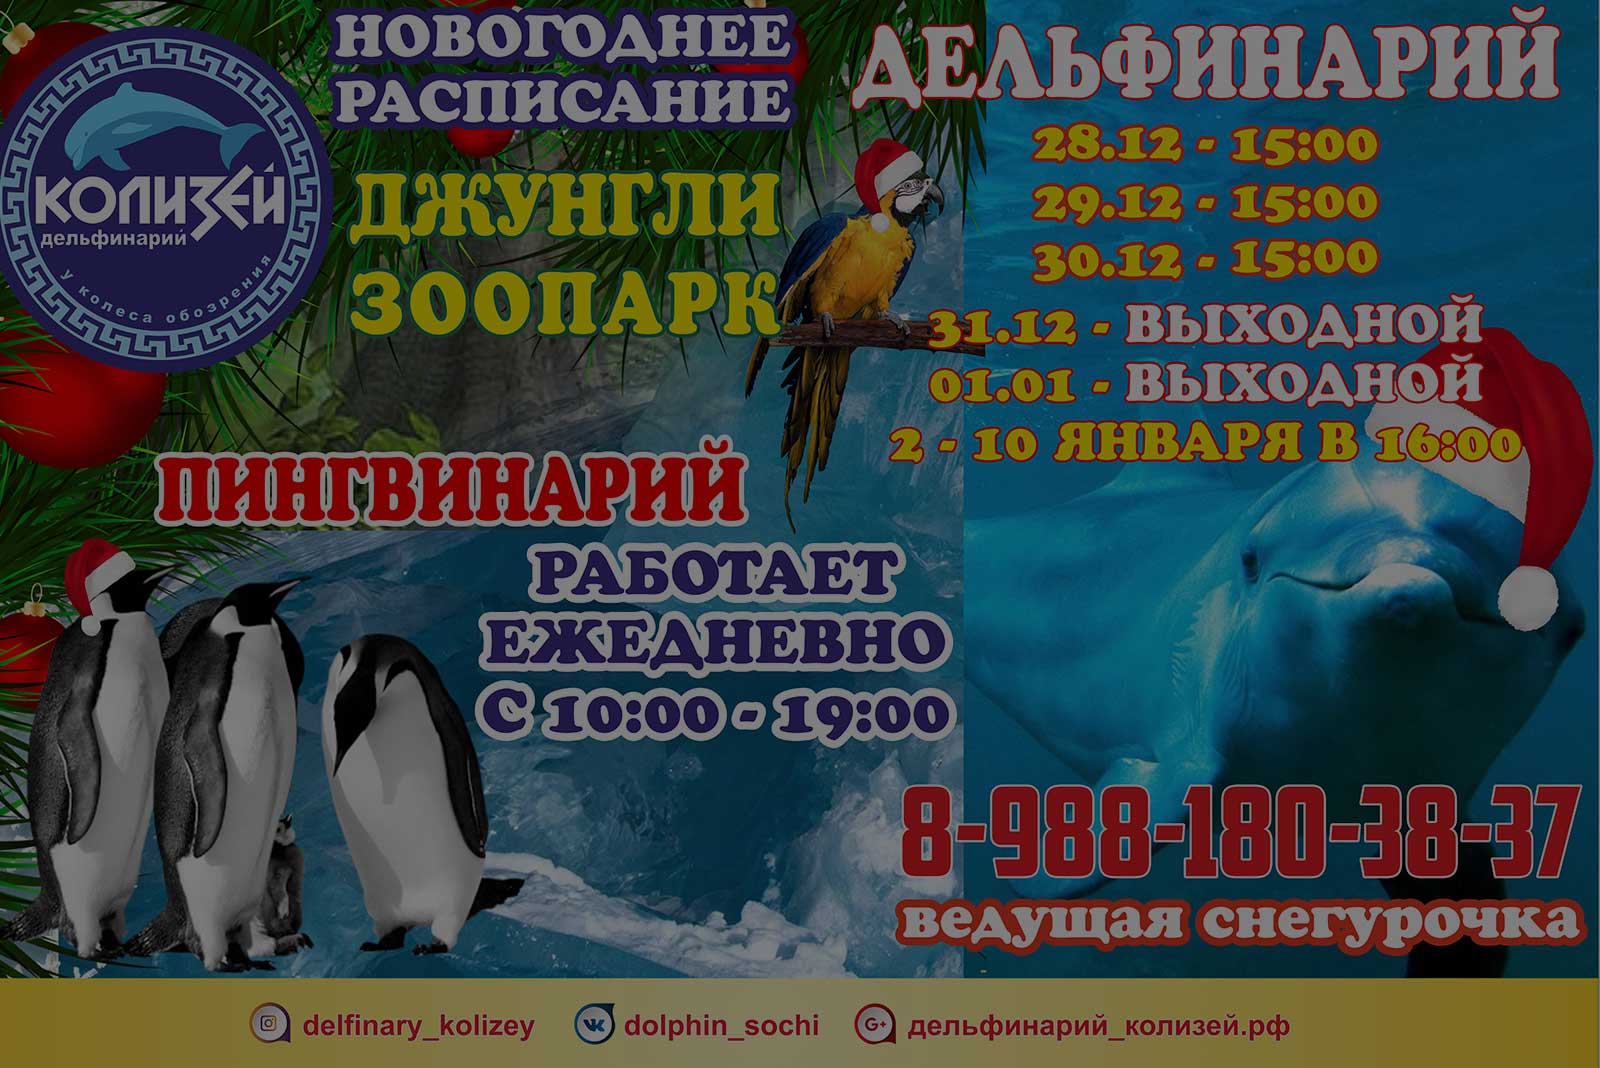 Дельфинарий в москве адреса и цены